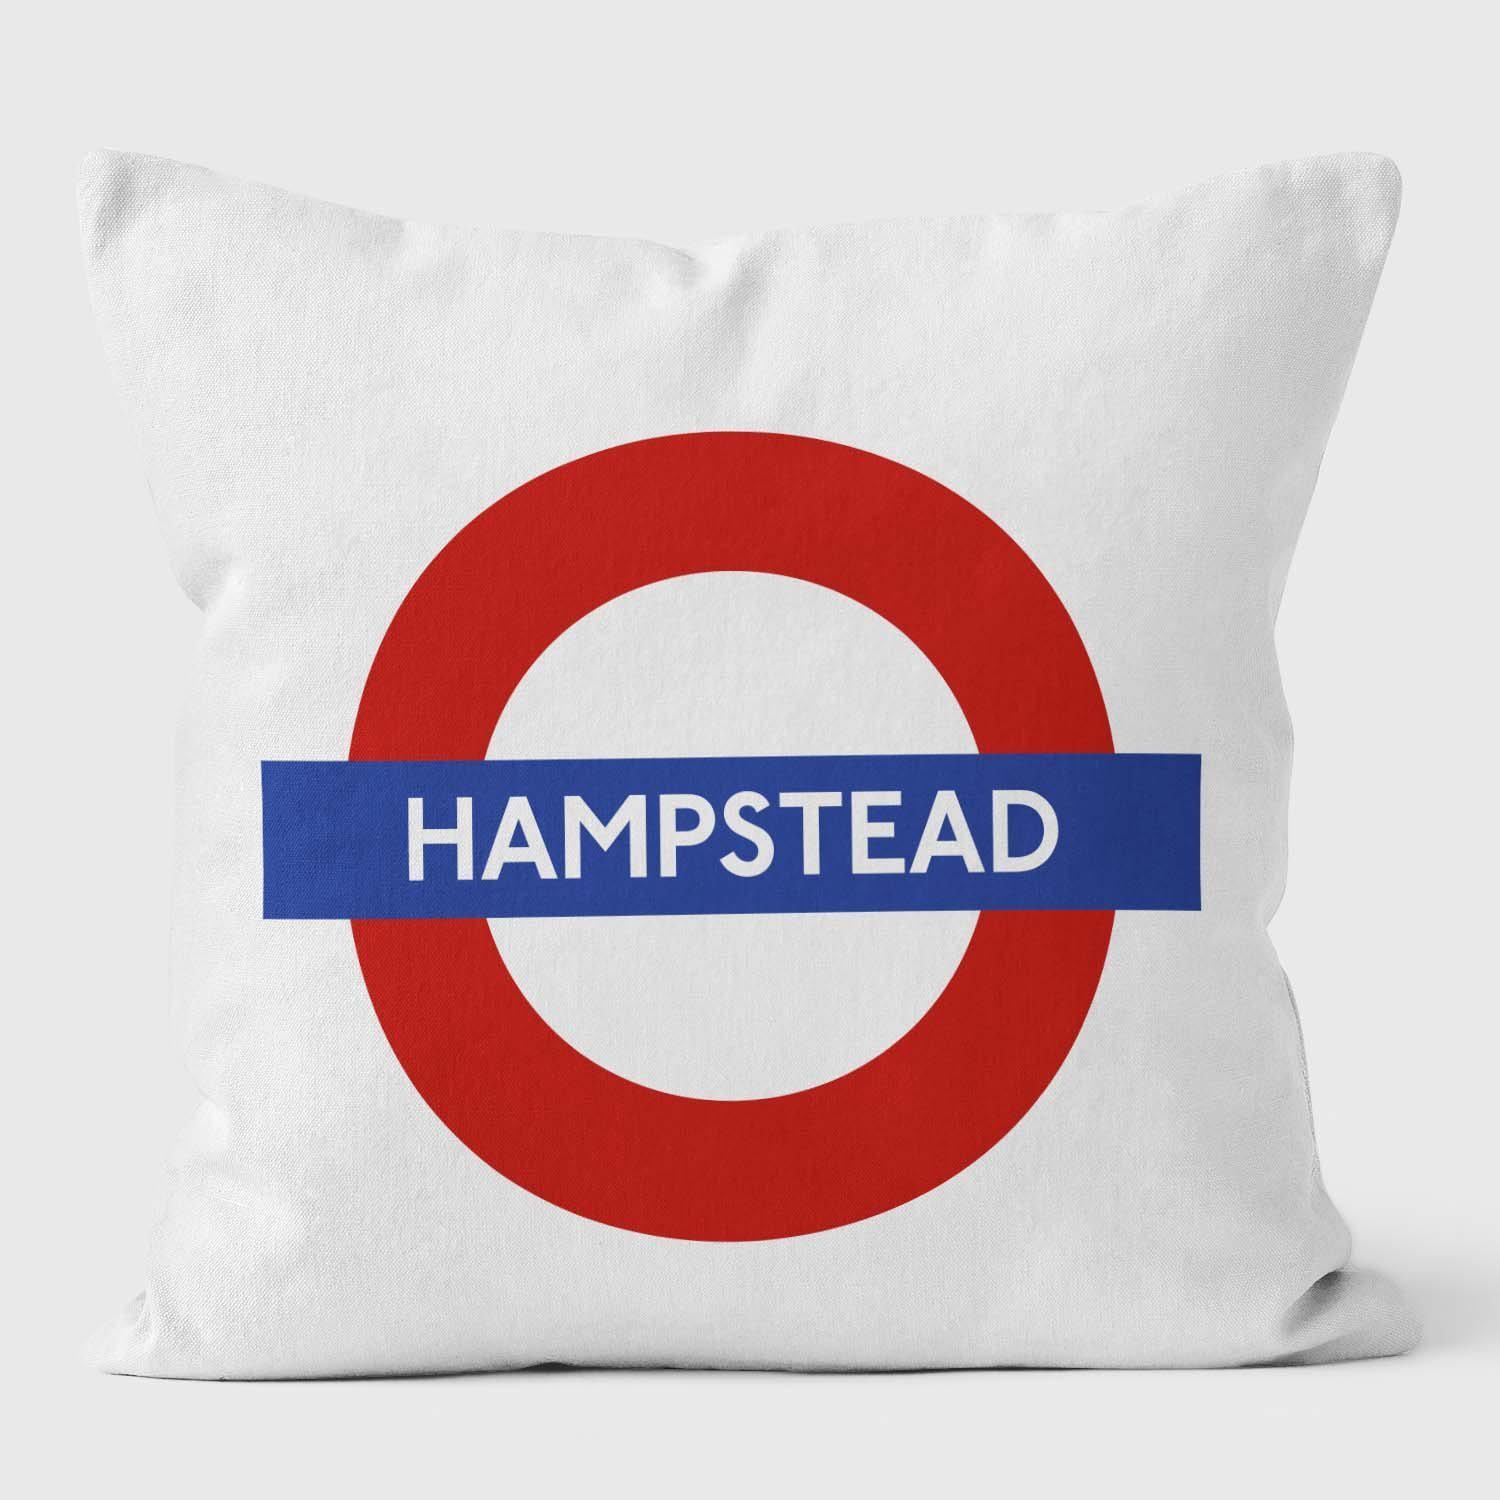 Hampstead London Underground Tube Station Roundel Cushion - Handmade Cushions UK - WeLoveCushions